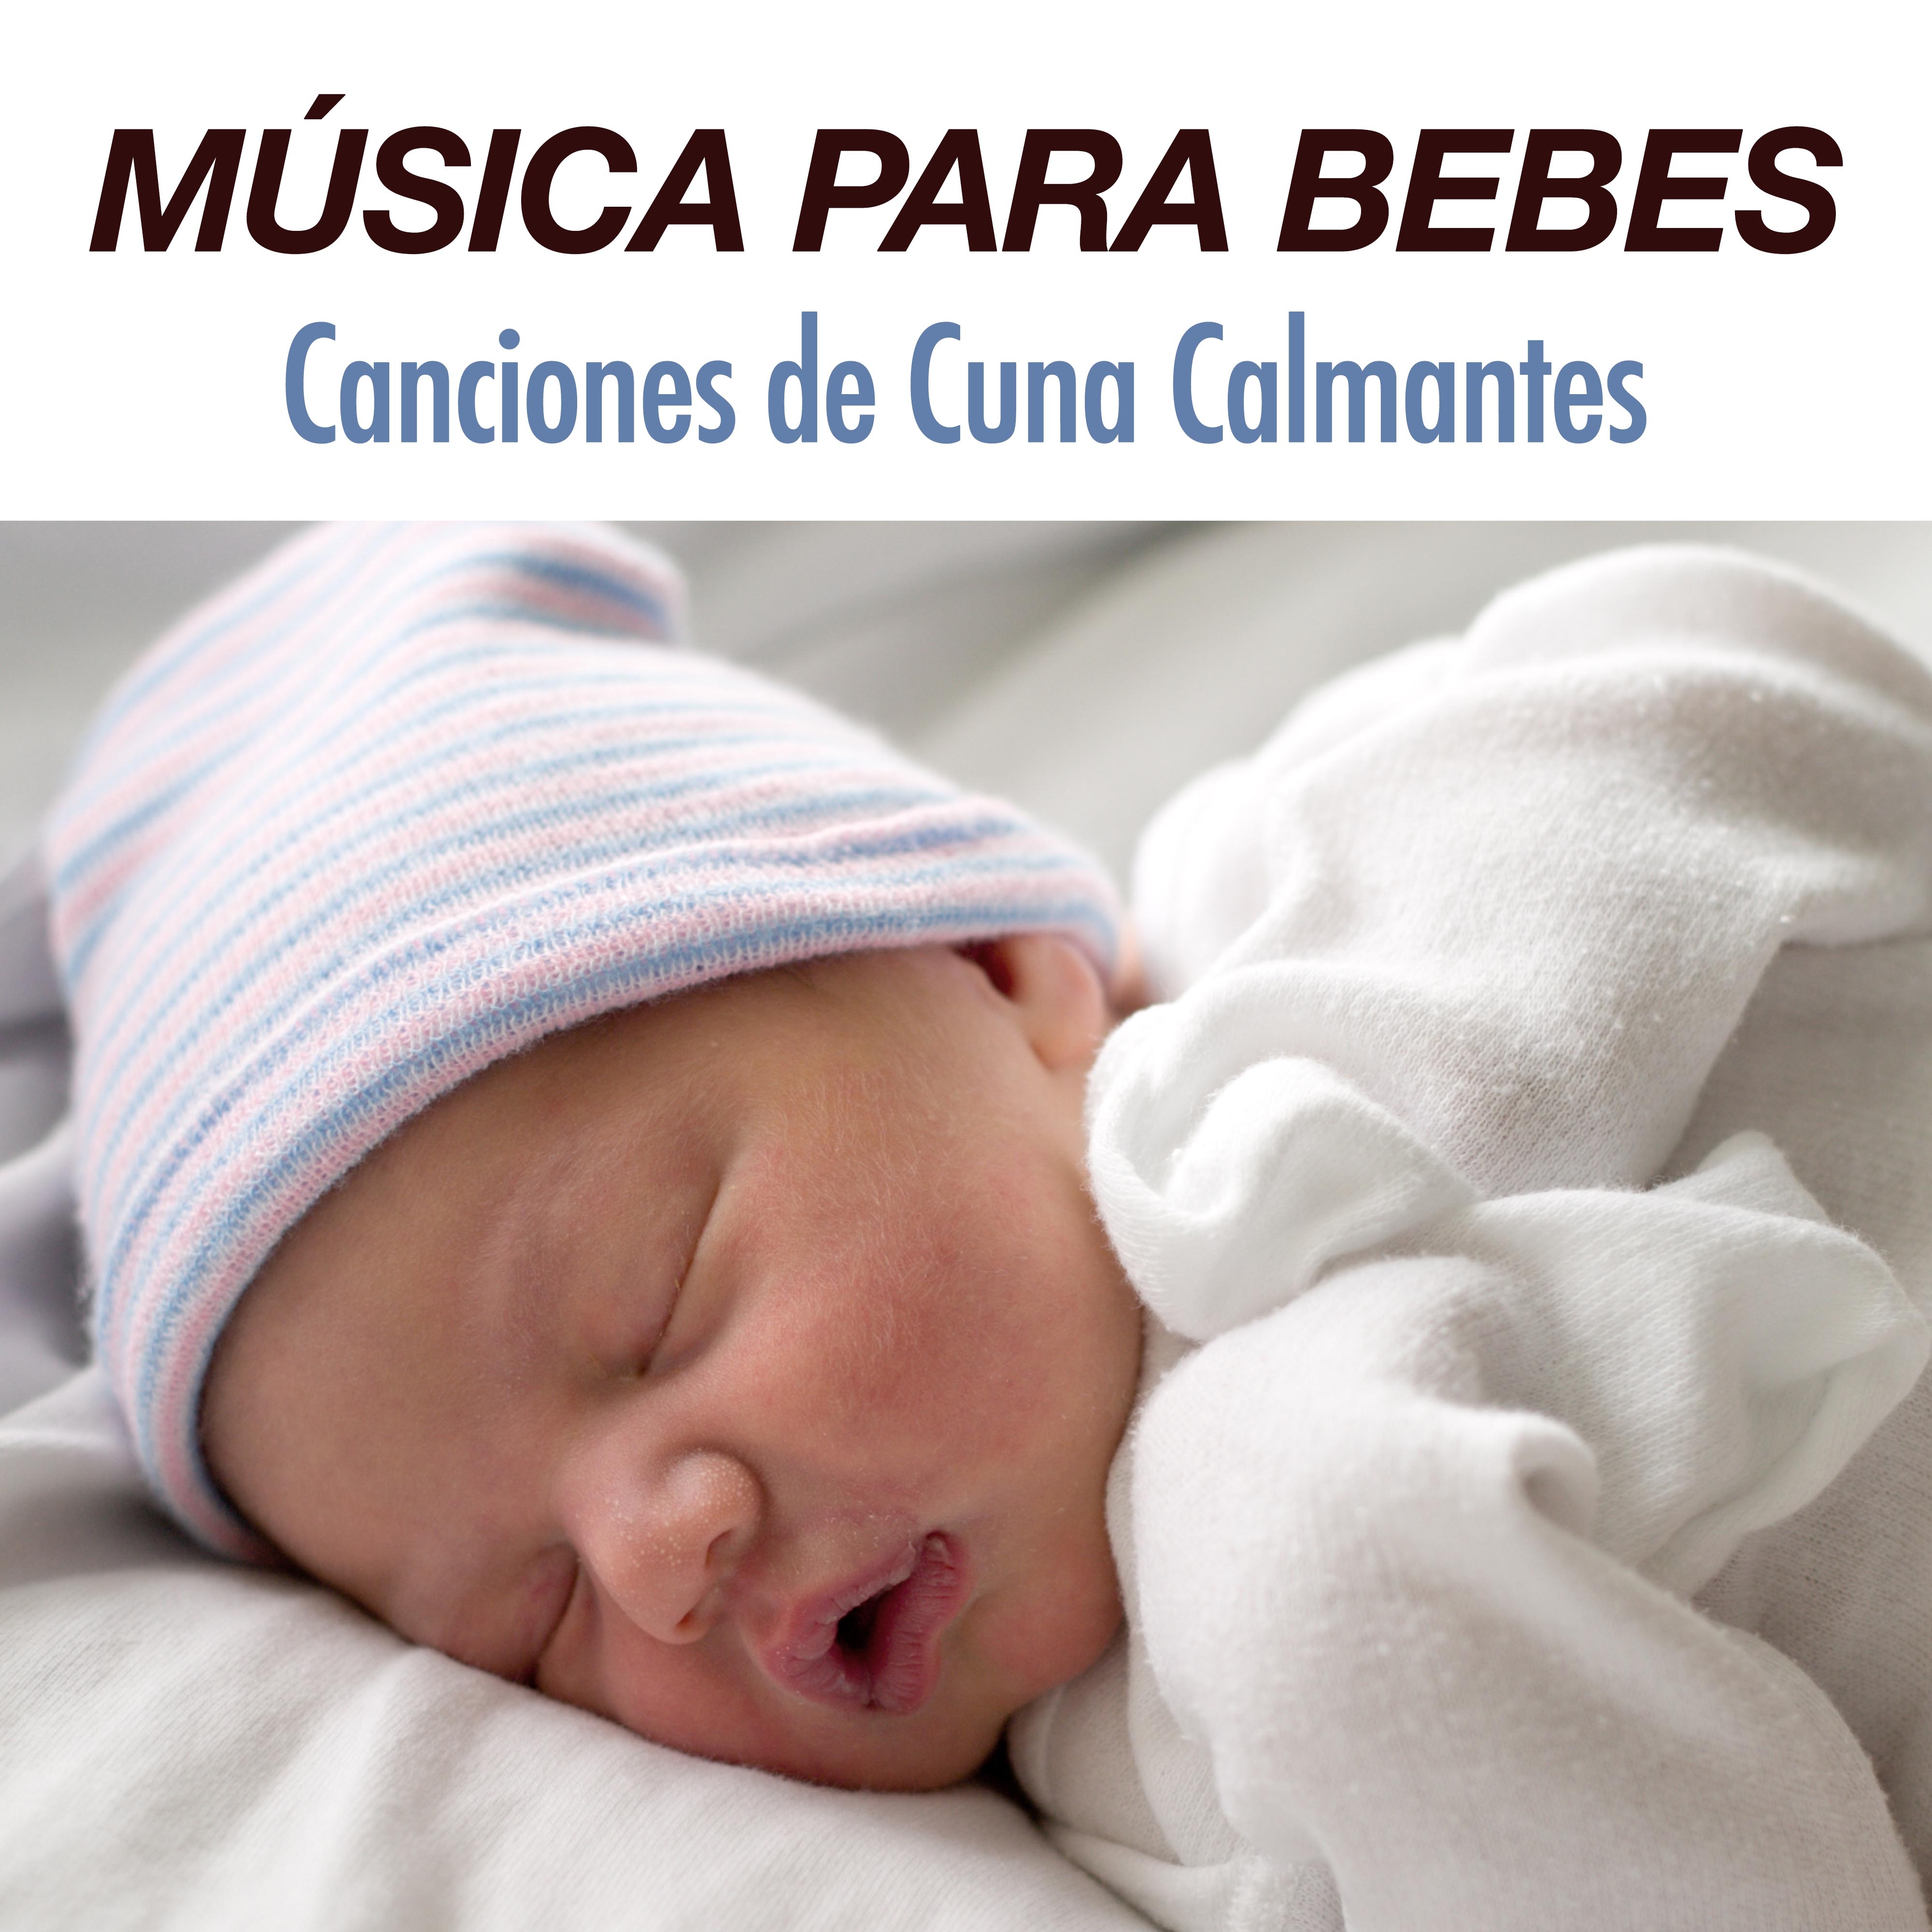 Musica New Age para Bebes - Canciones de Cuna y Musica para Dormir